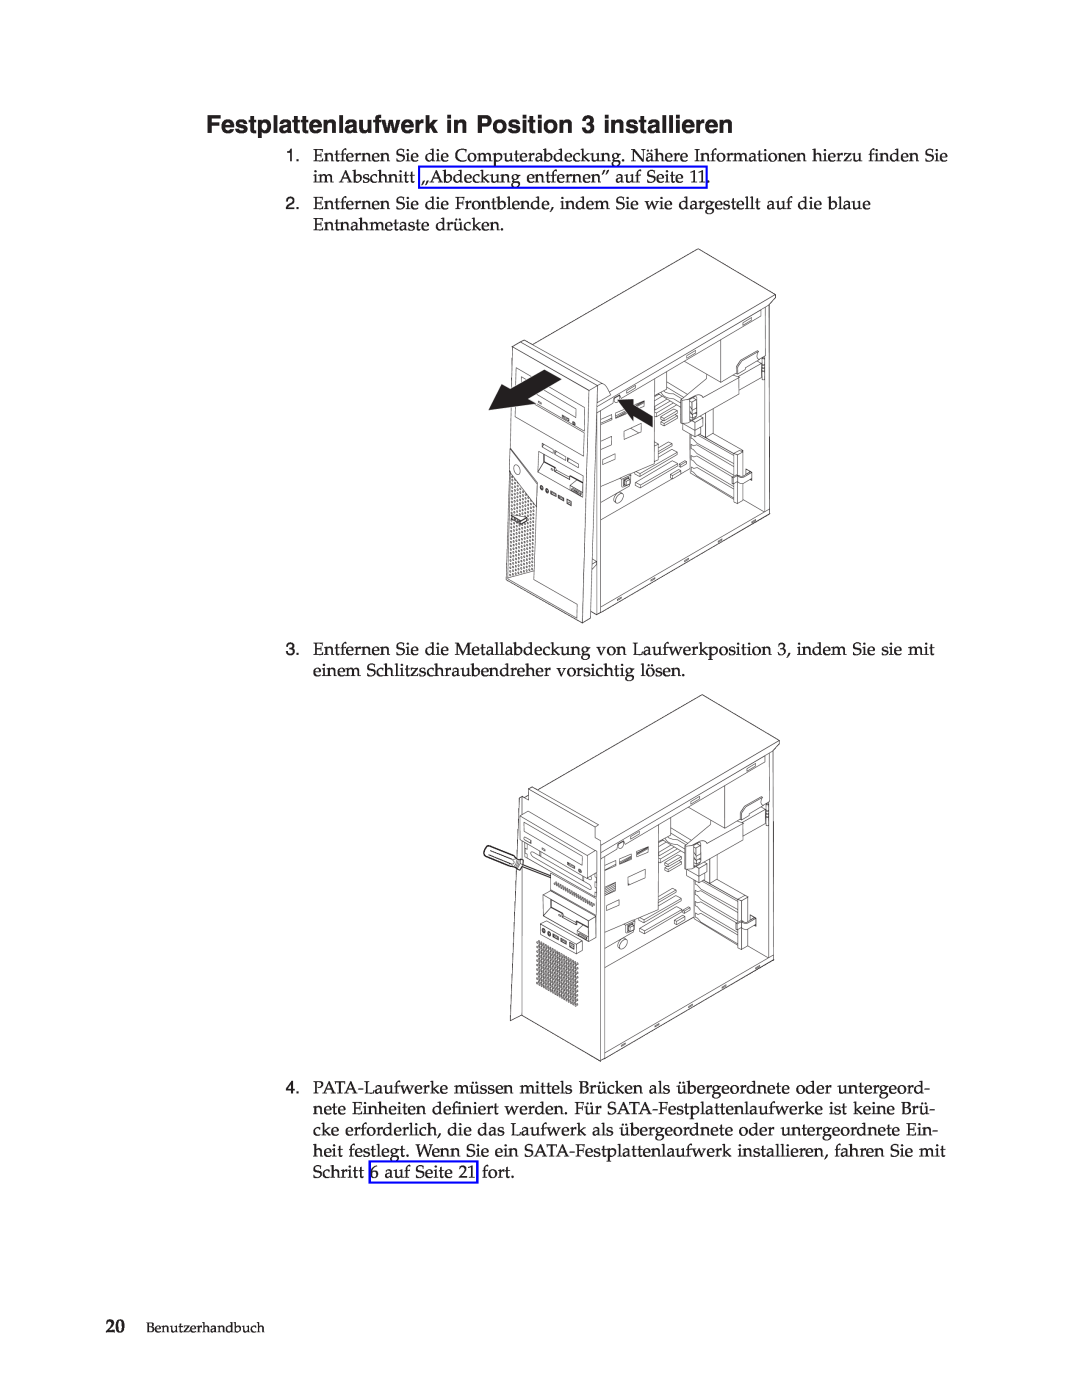 IBM 9212, 9213 manual Festplattenlaufwerk in Position 3 installieren, Benutzerhandbuch 